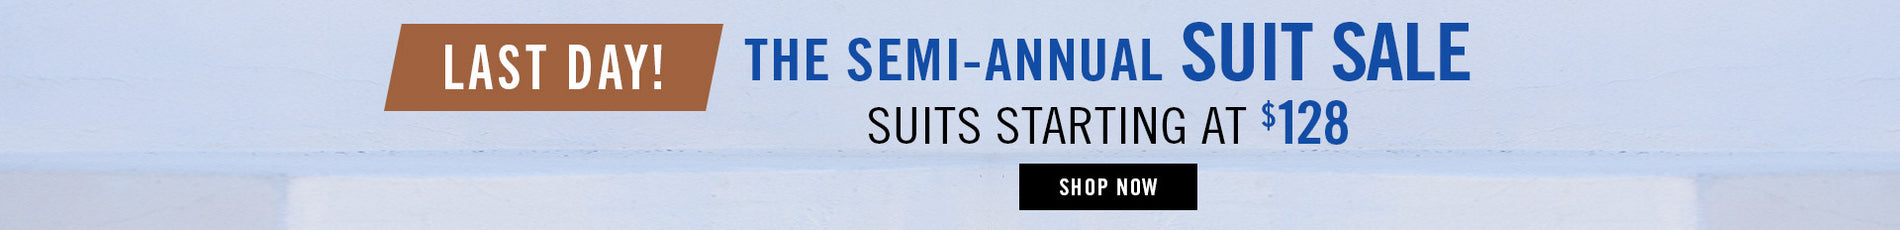 semi-annual suit sale - SHOP NOW